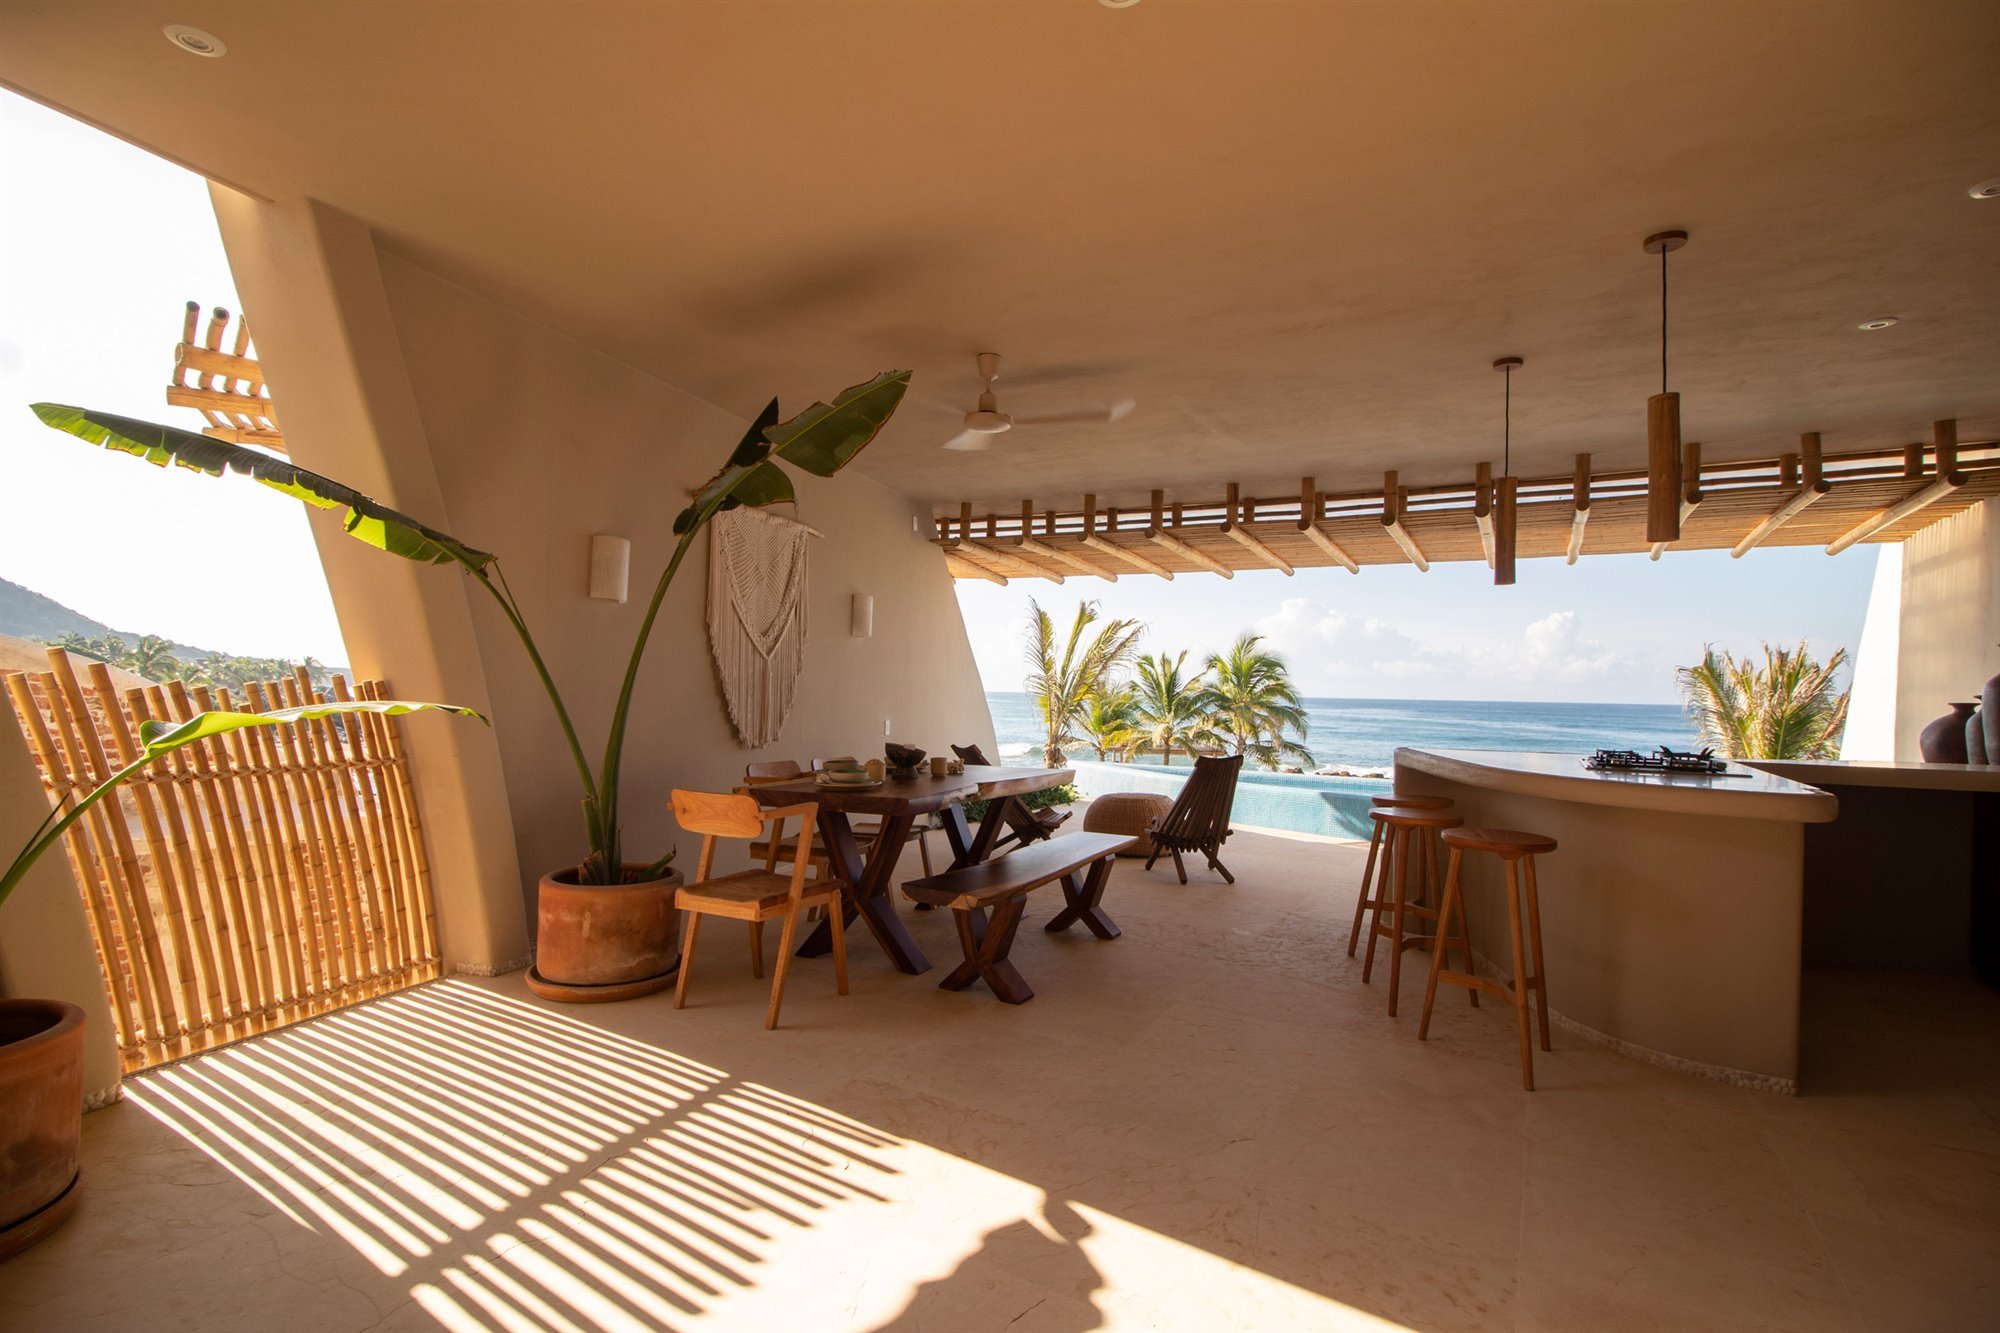 Casa en la playa con interiores de color ocre cocina abierta